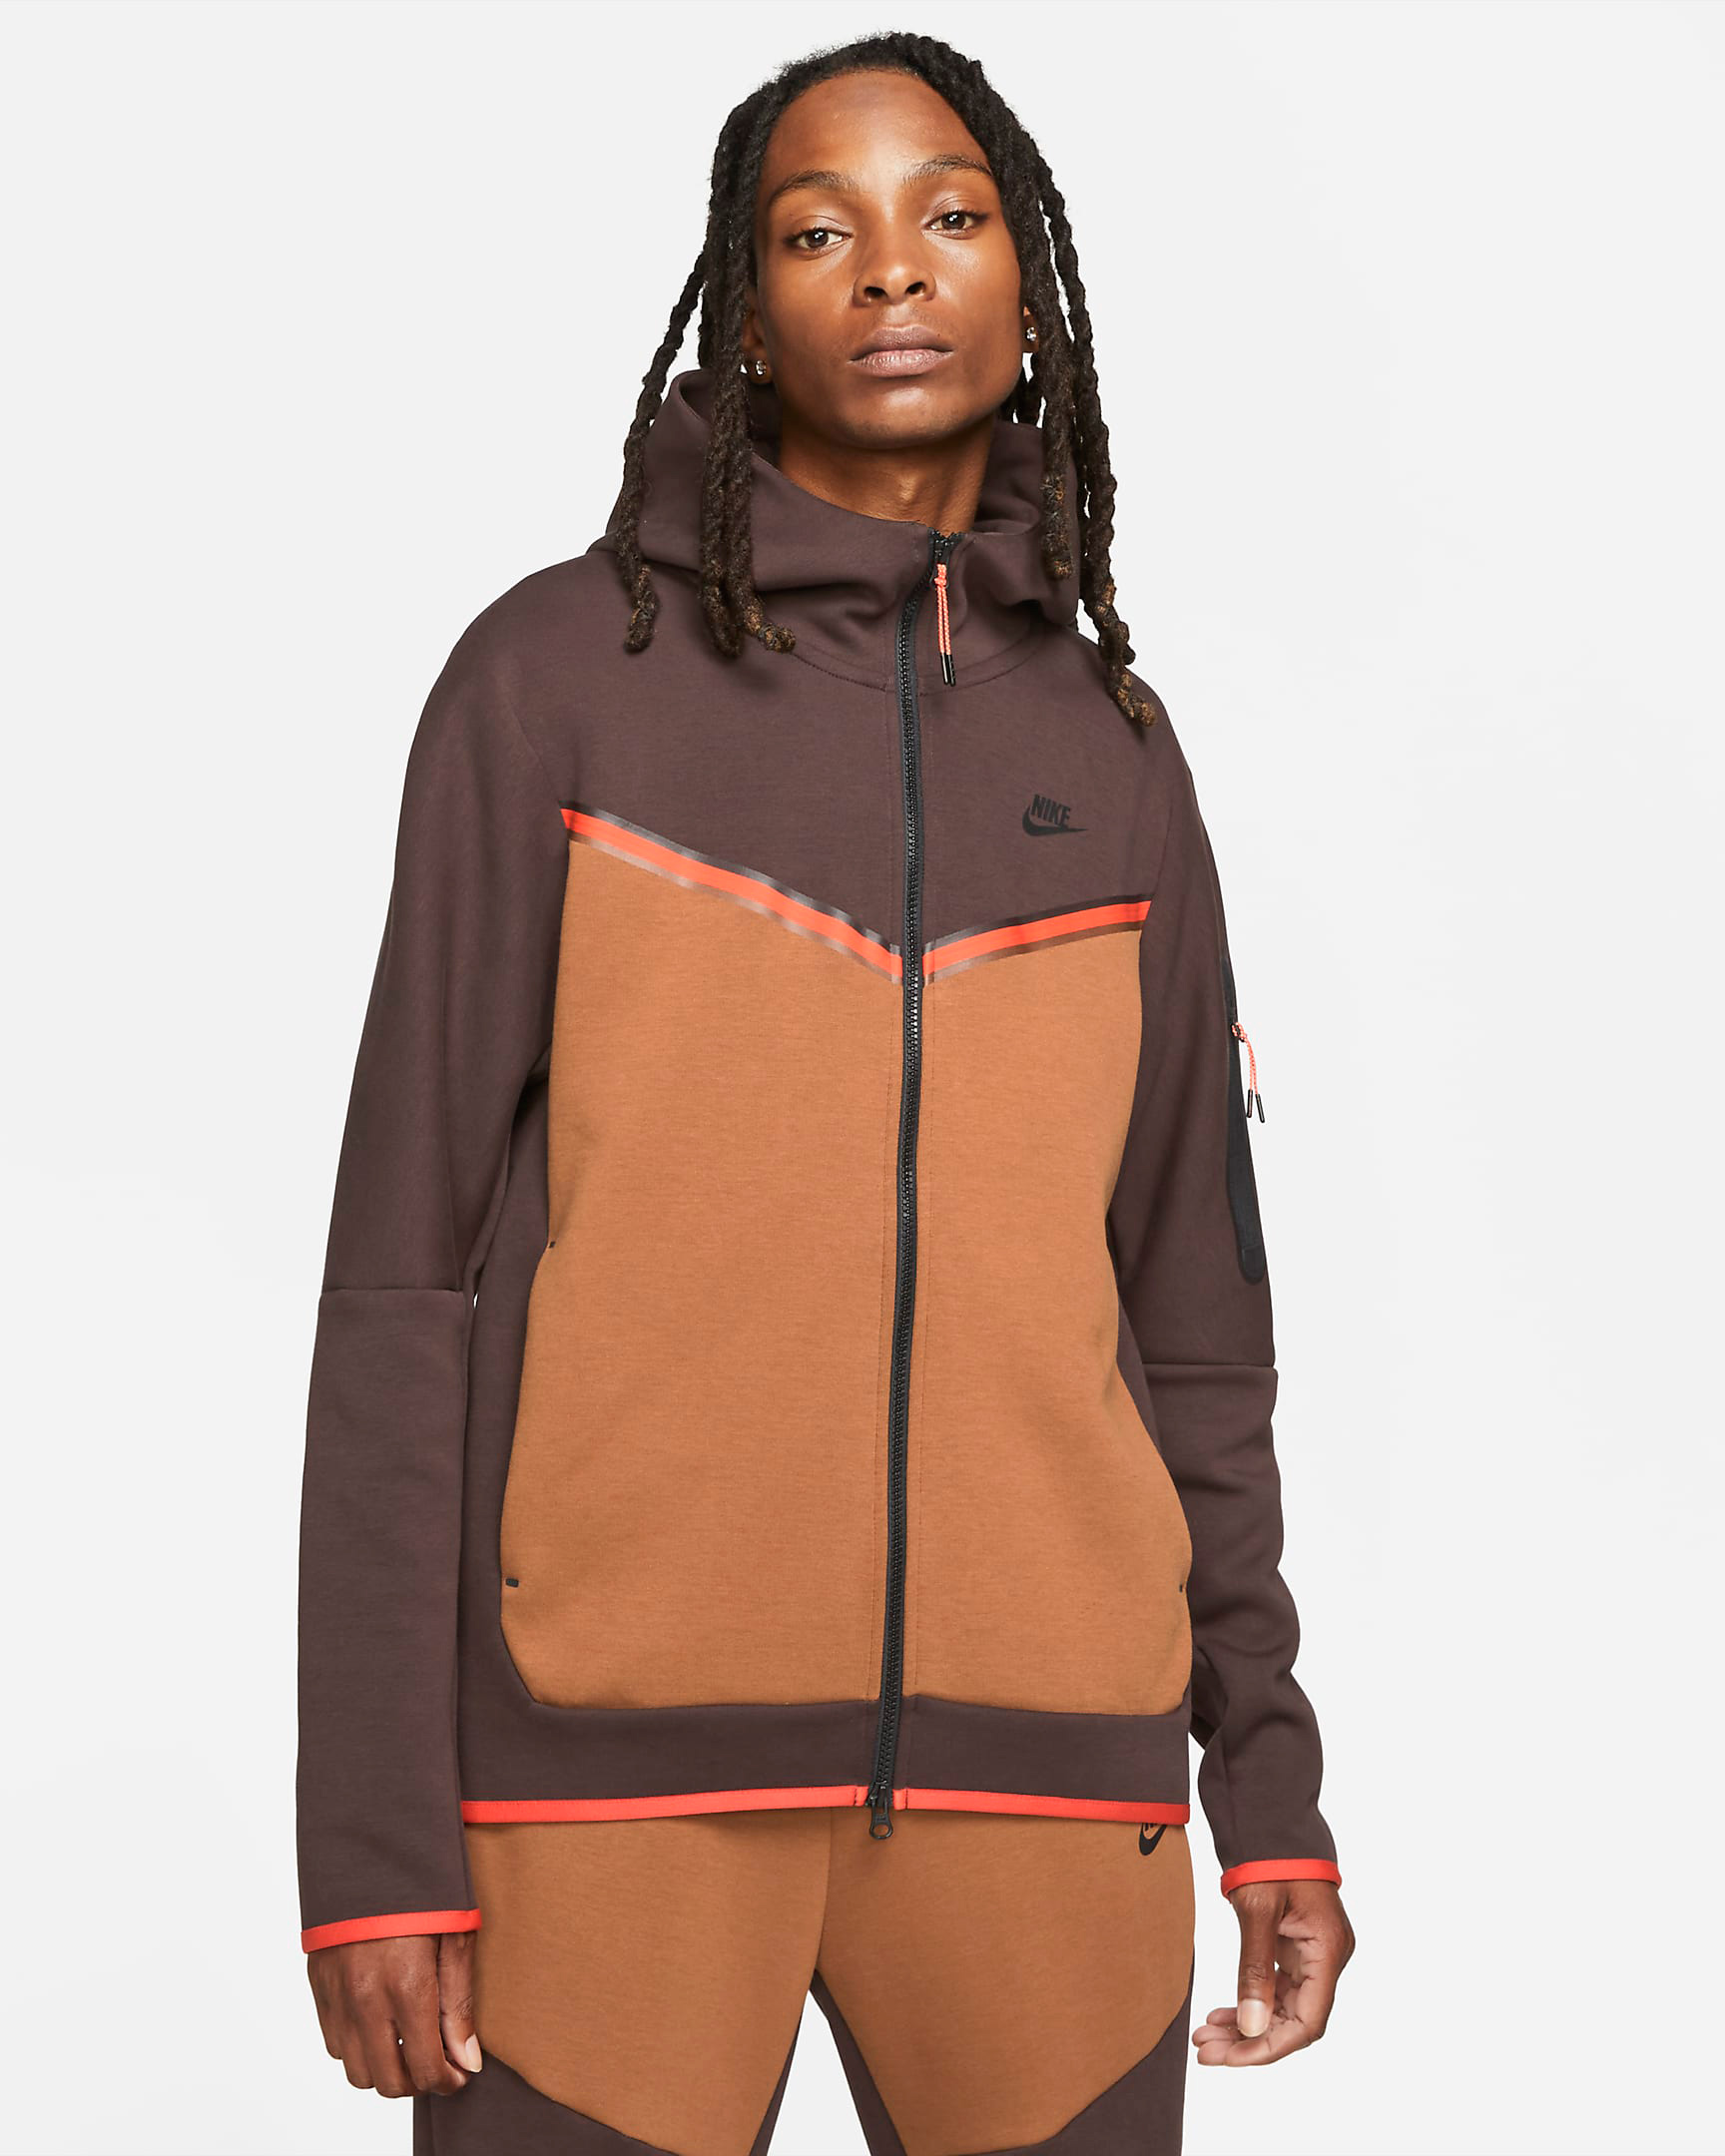 nike-tech-fleece-hoodie-brown-basalt-pecan-chile-red-black